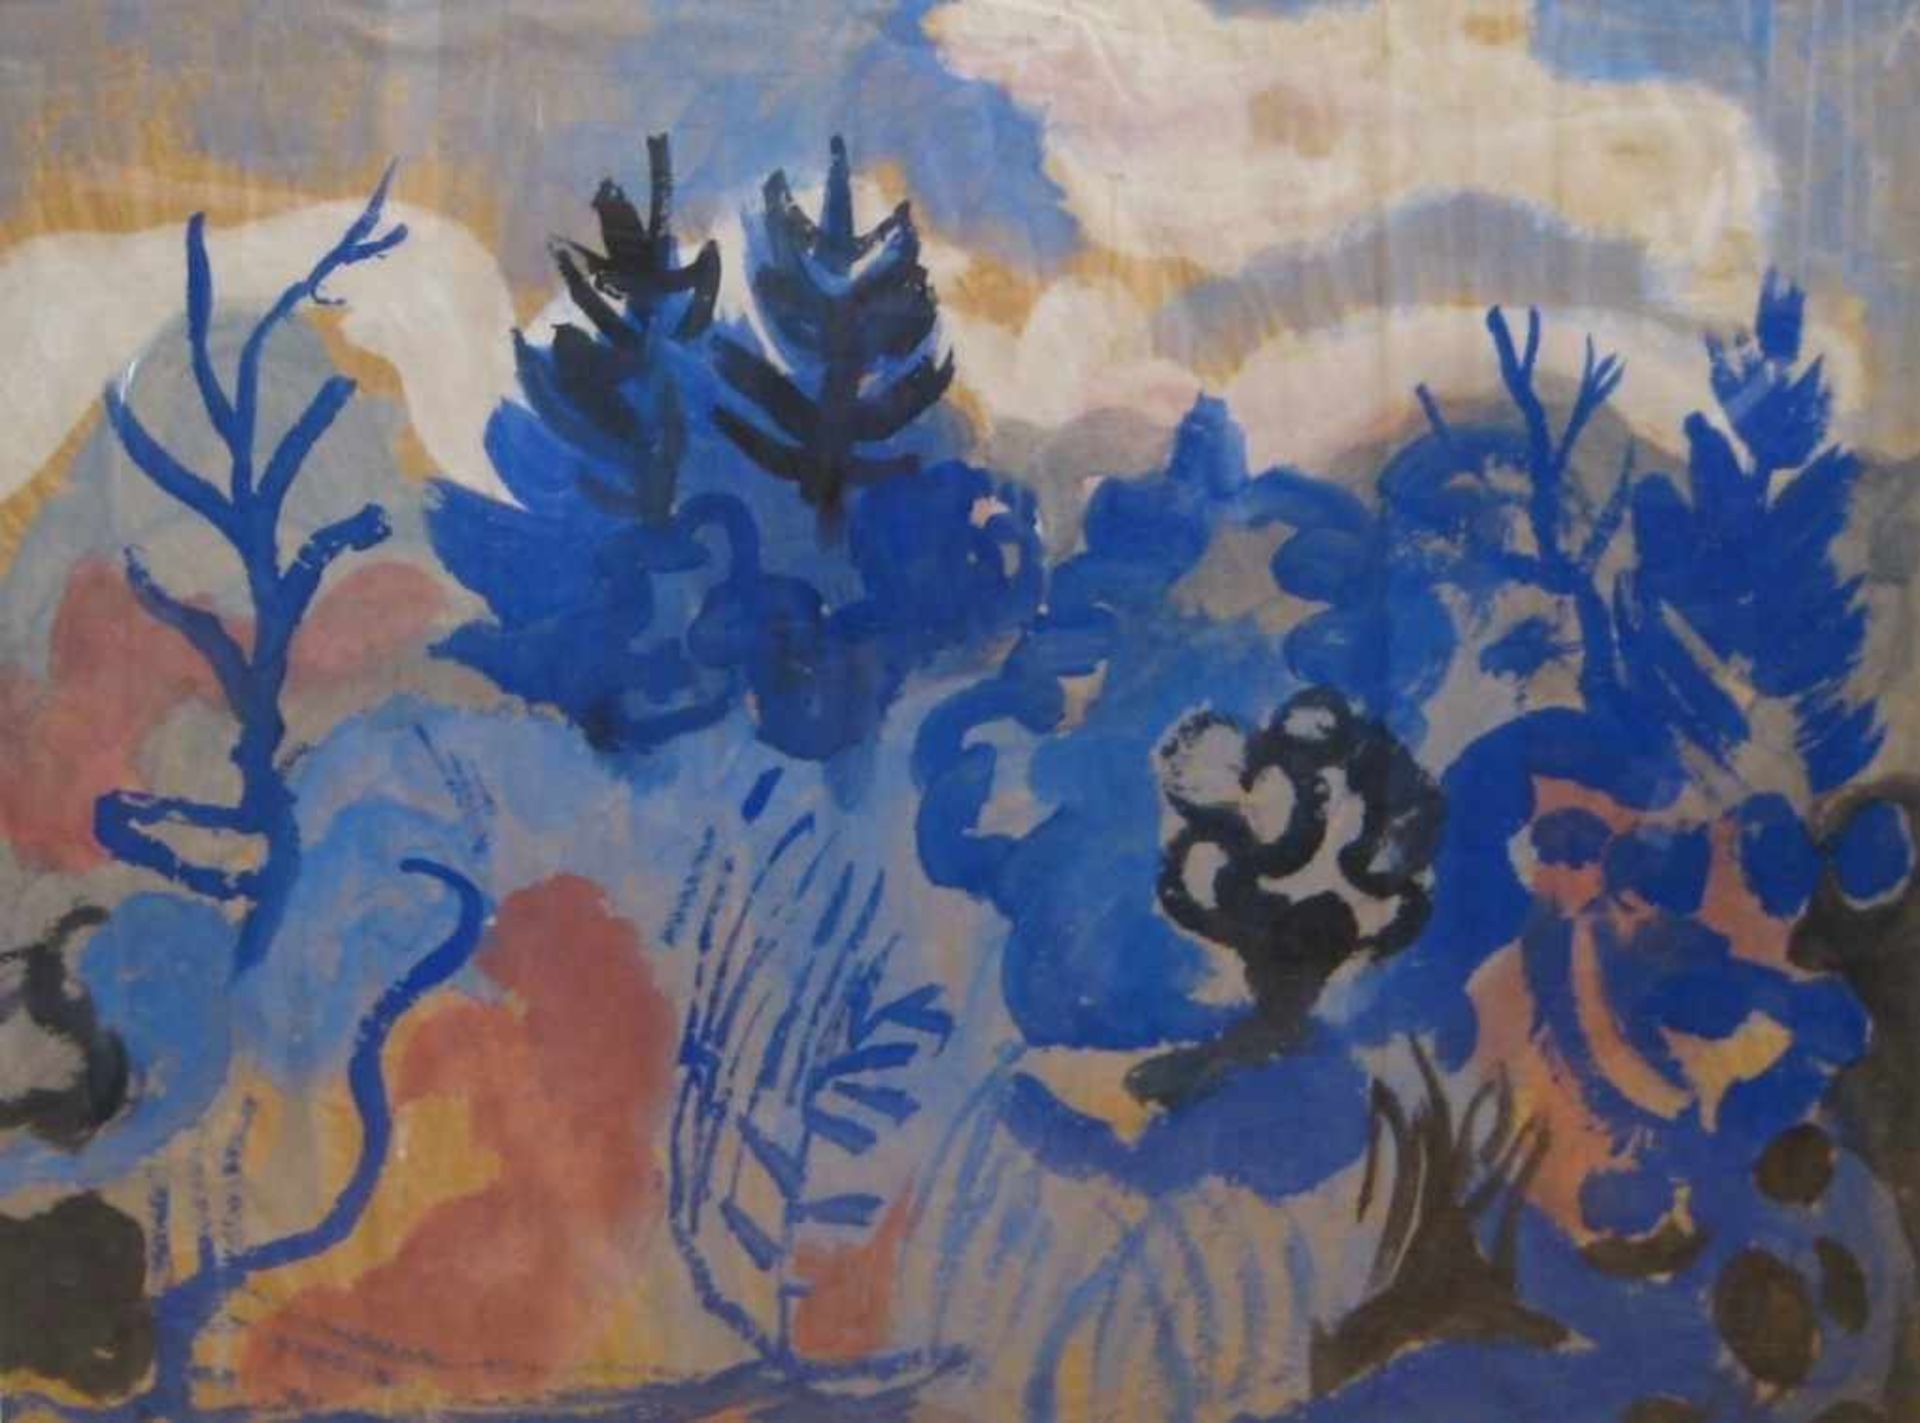 Kamps, Heinrich, 1896 - 1954, Krefeld - Düsseldorf, "Landschaft mit blauen Bäumen", re.u.monogr.,